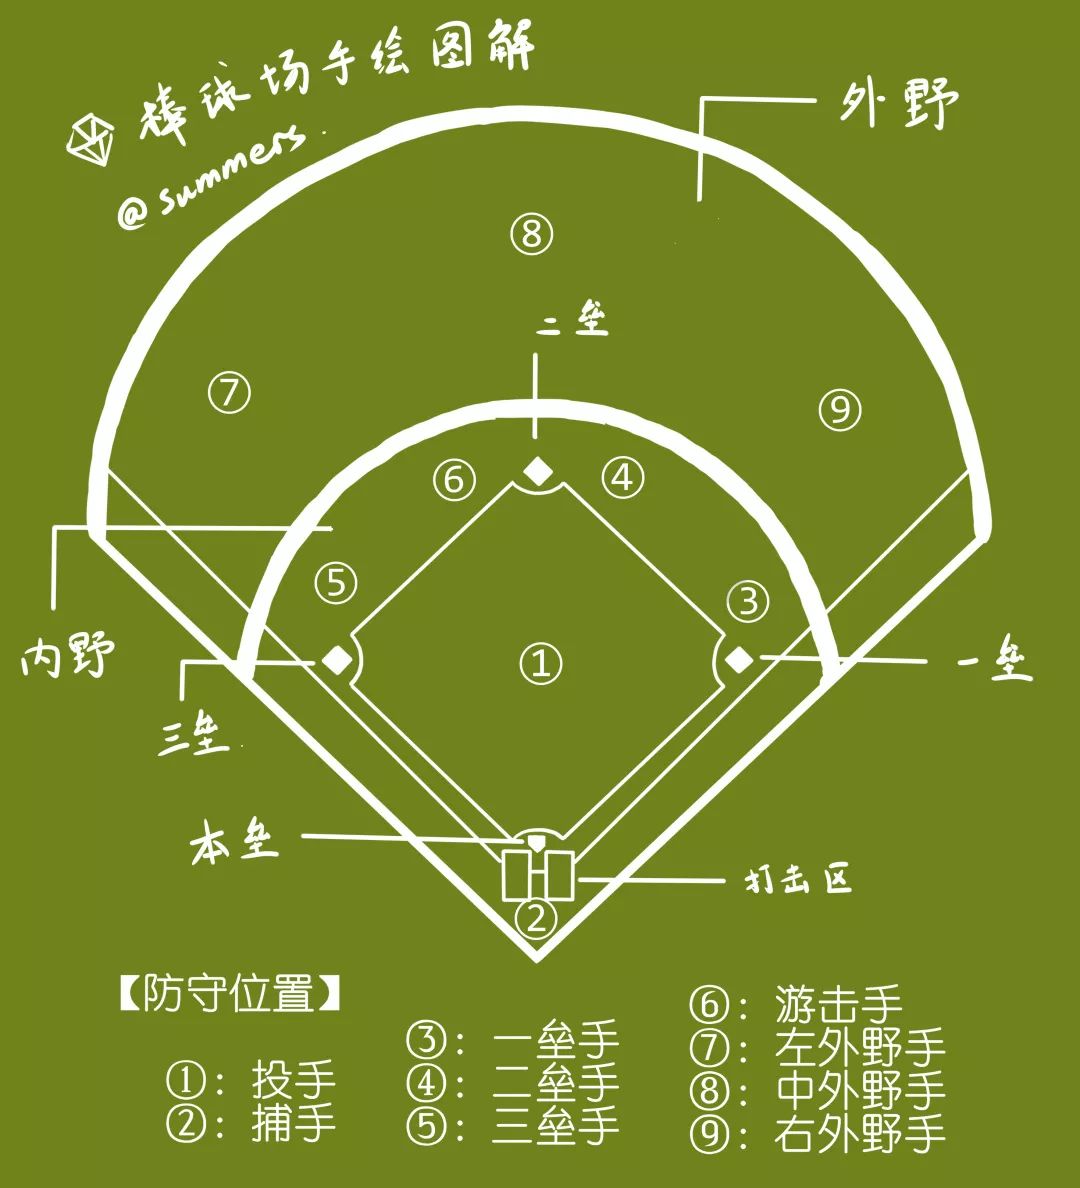 垒球规则图解图片